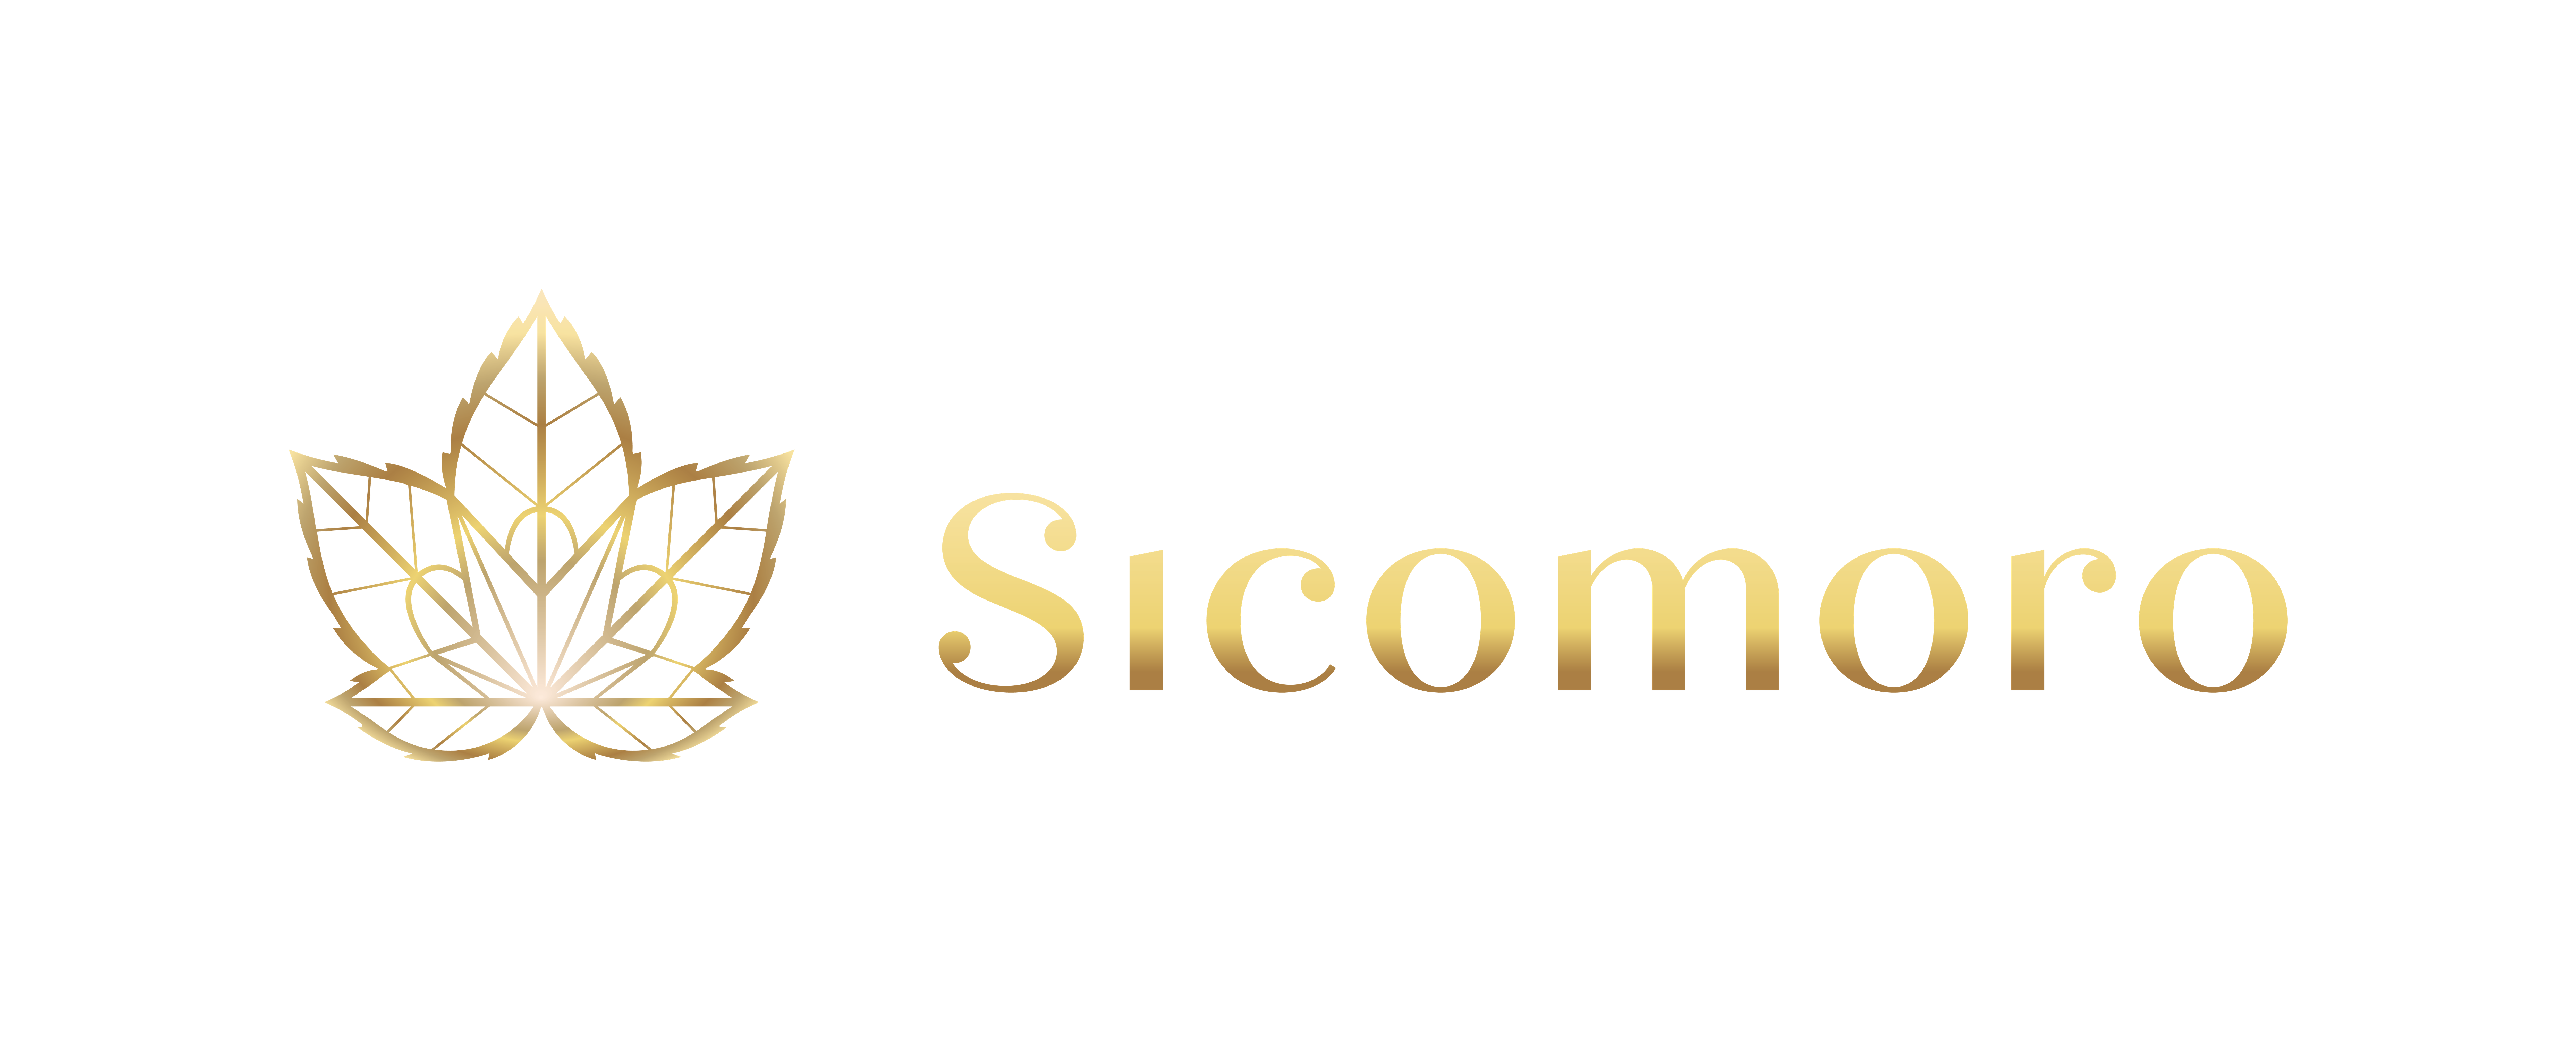 Sicomoro